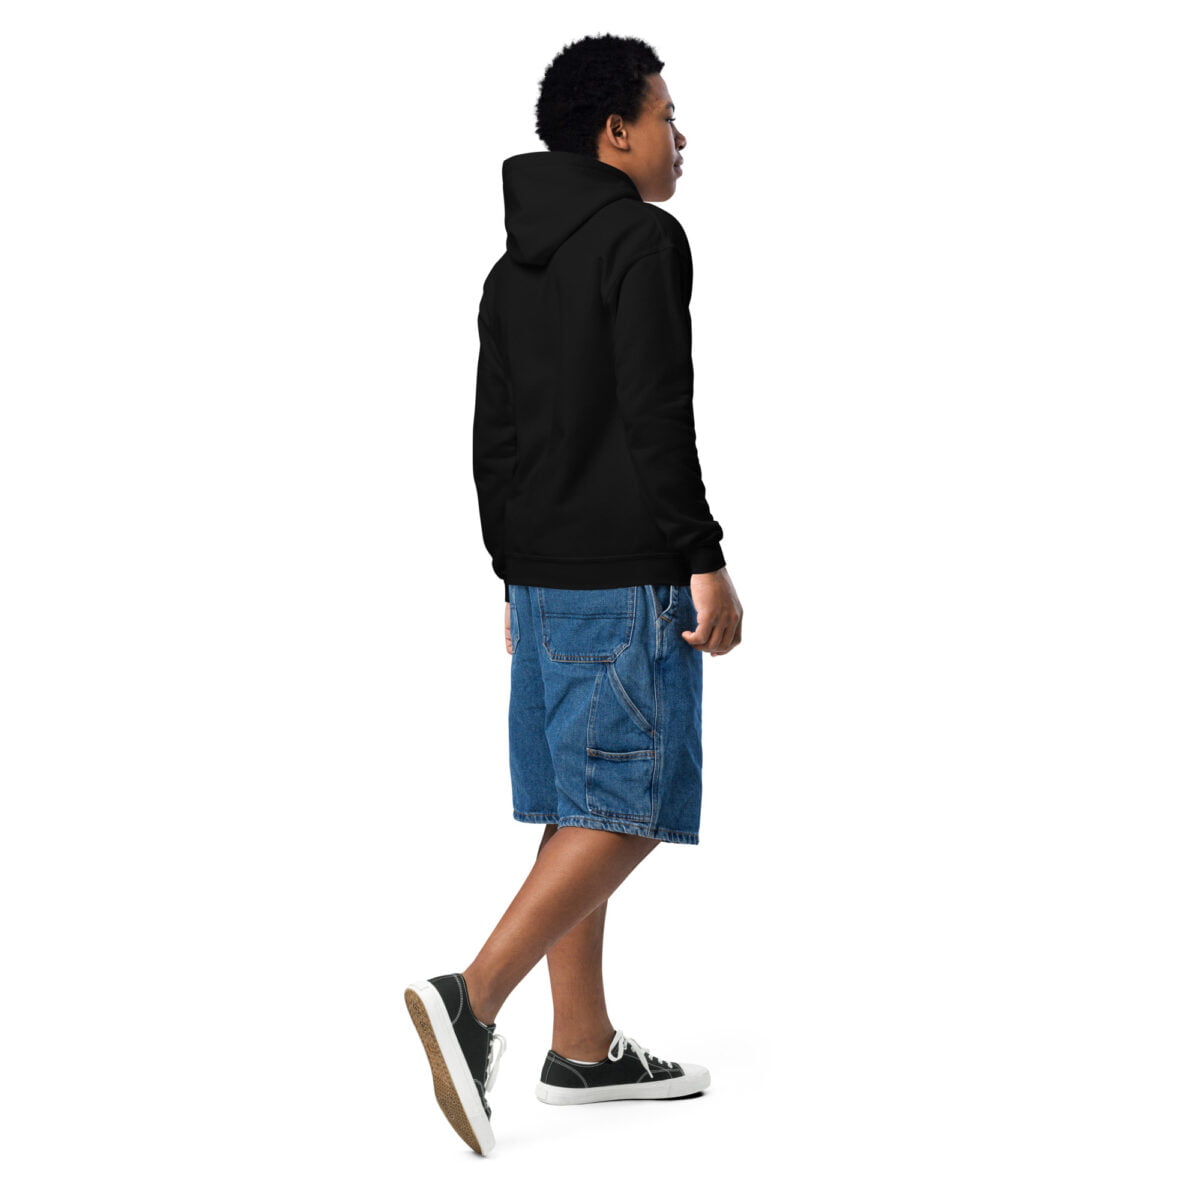 youth heavy blend hoodie black back 2 65cef76229aa2 hoodie